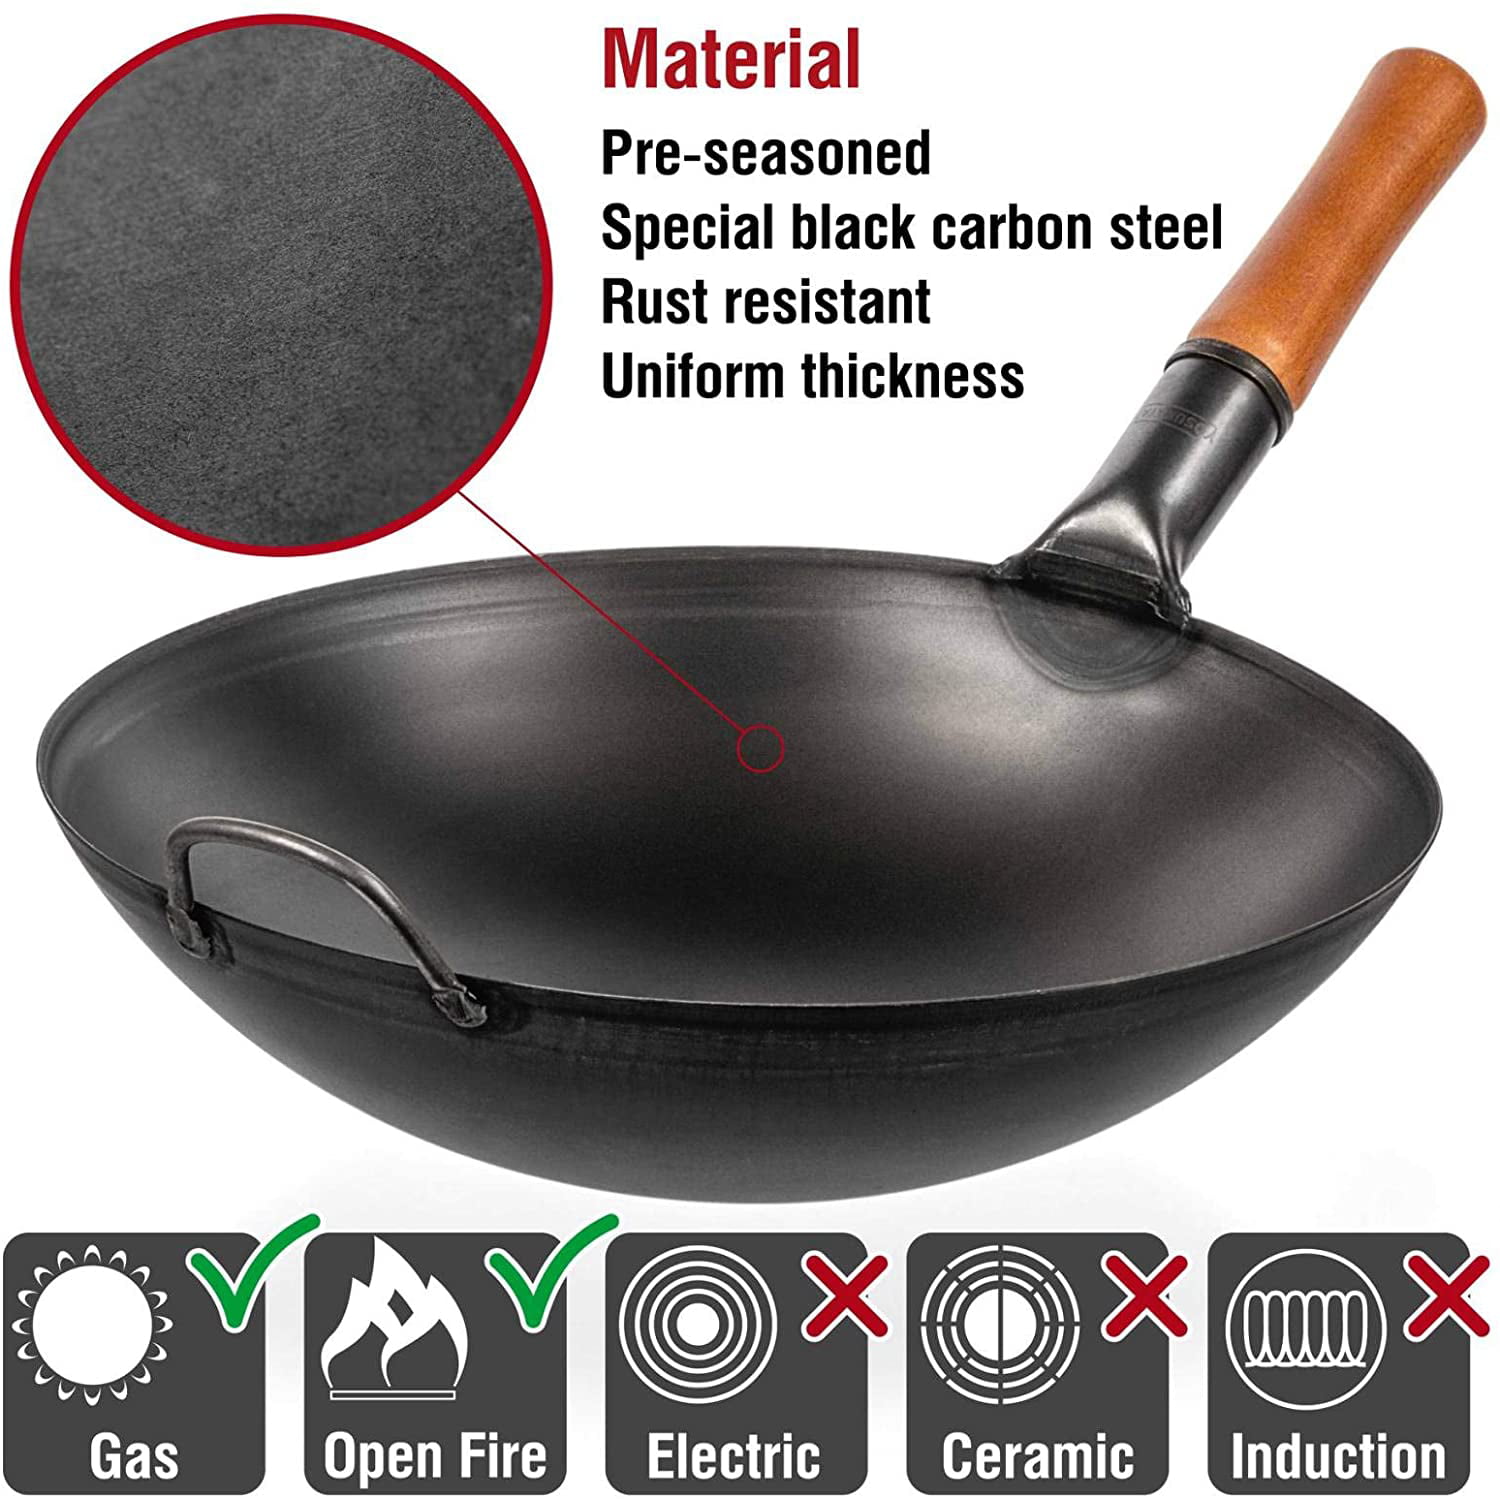 Yosukata Carbon Steel Wok Pan   20 “ Woks and Stir Fry Pans ...